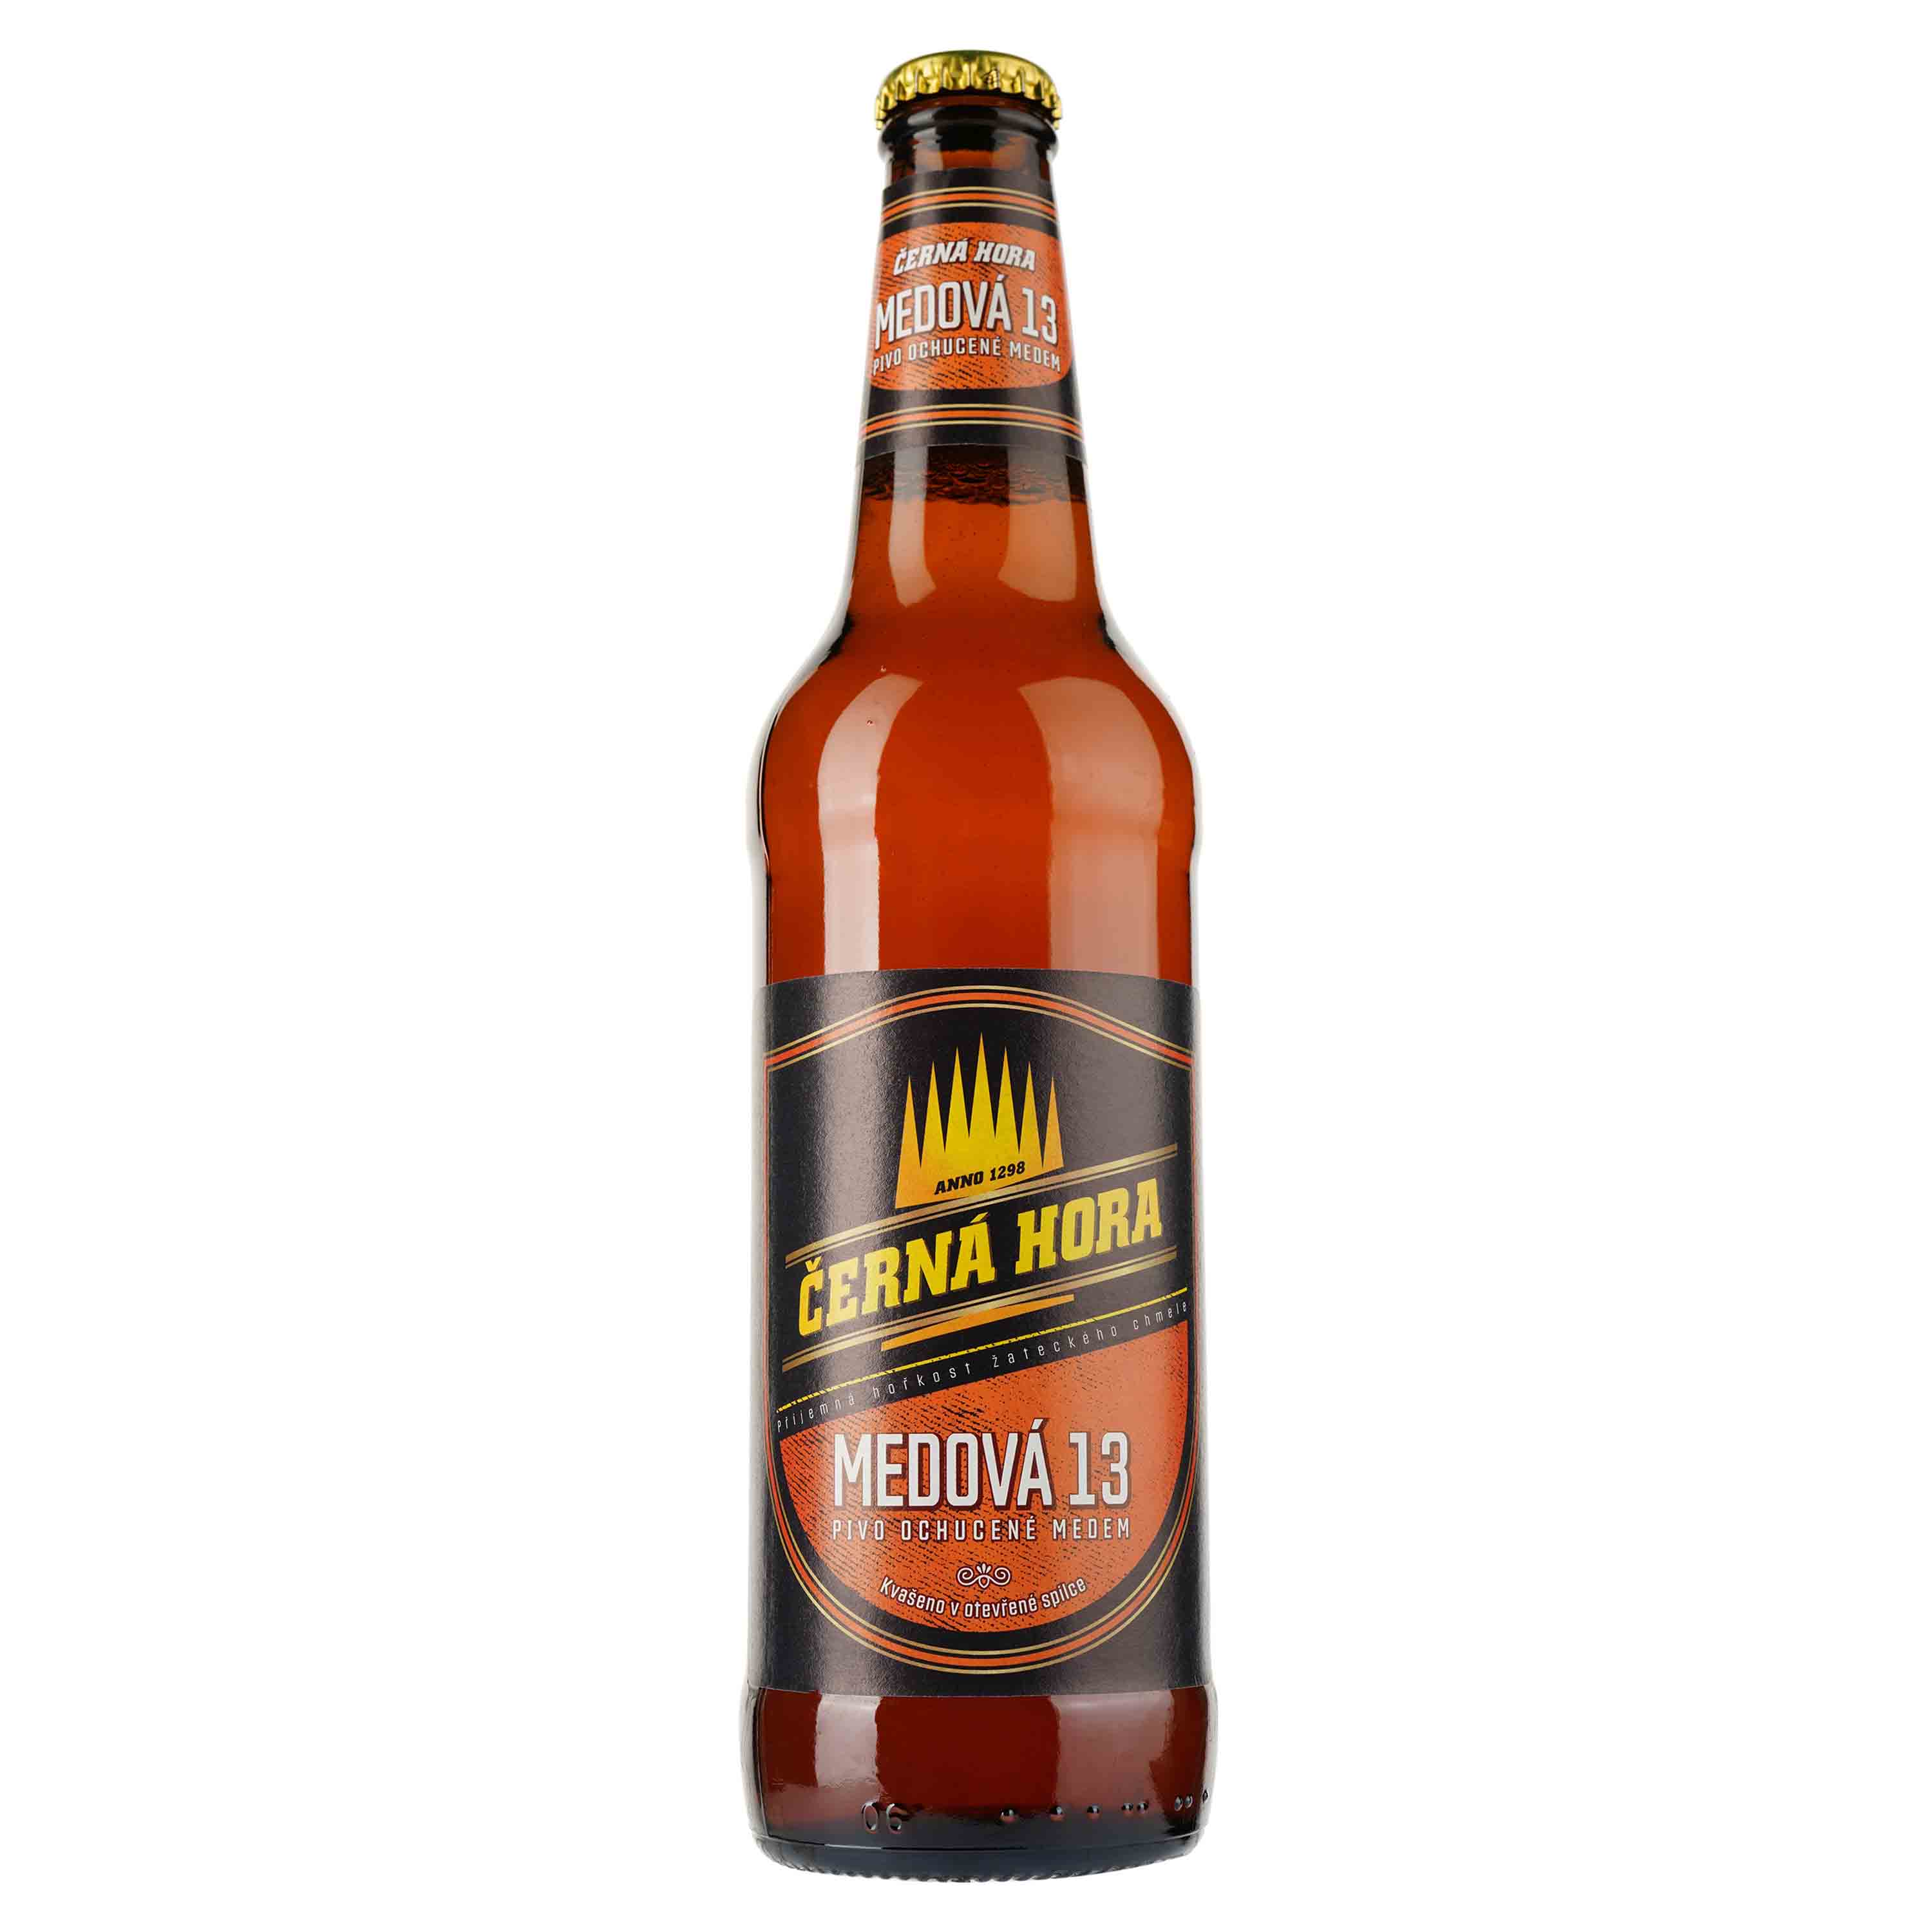 Пиво Cerna Hora Medova 13 светлое, 5,7%, 0,5 л (805743) - фото 1